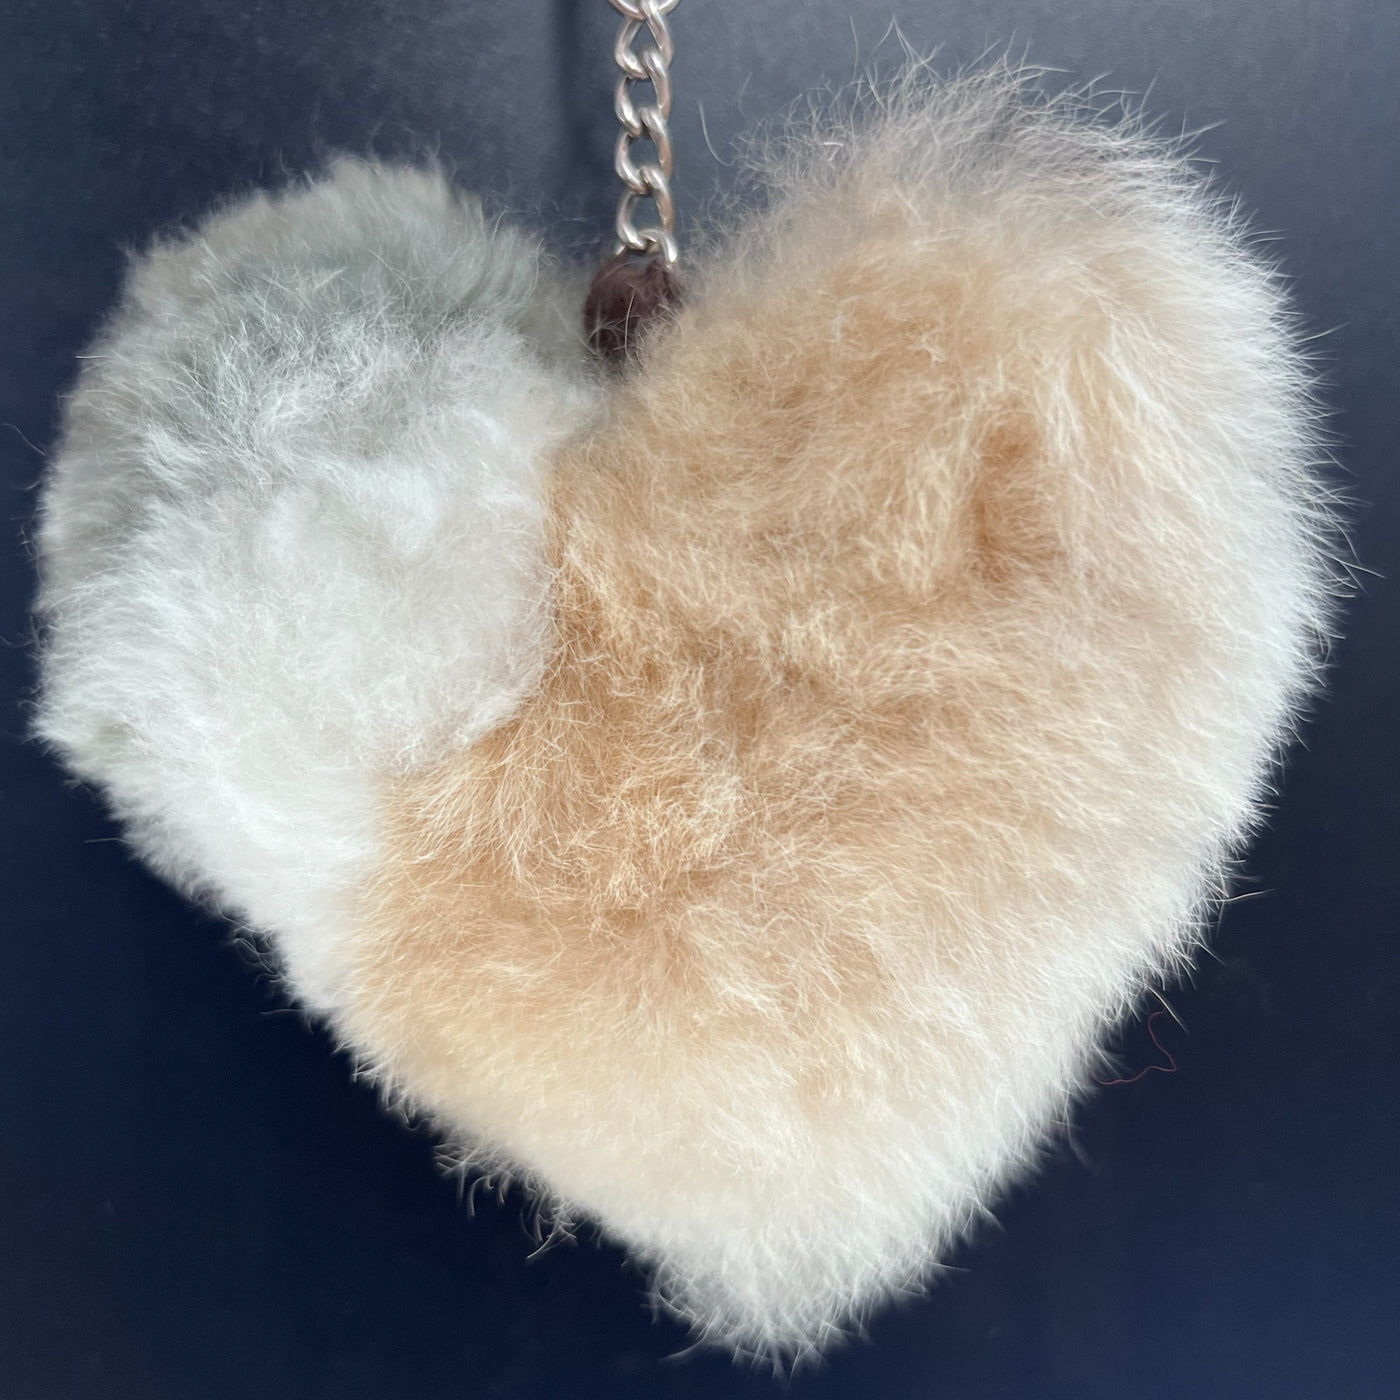 Fuzzy Alpaca Key Chains - Undyed